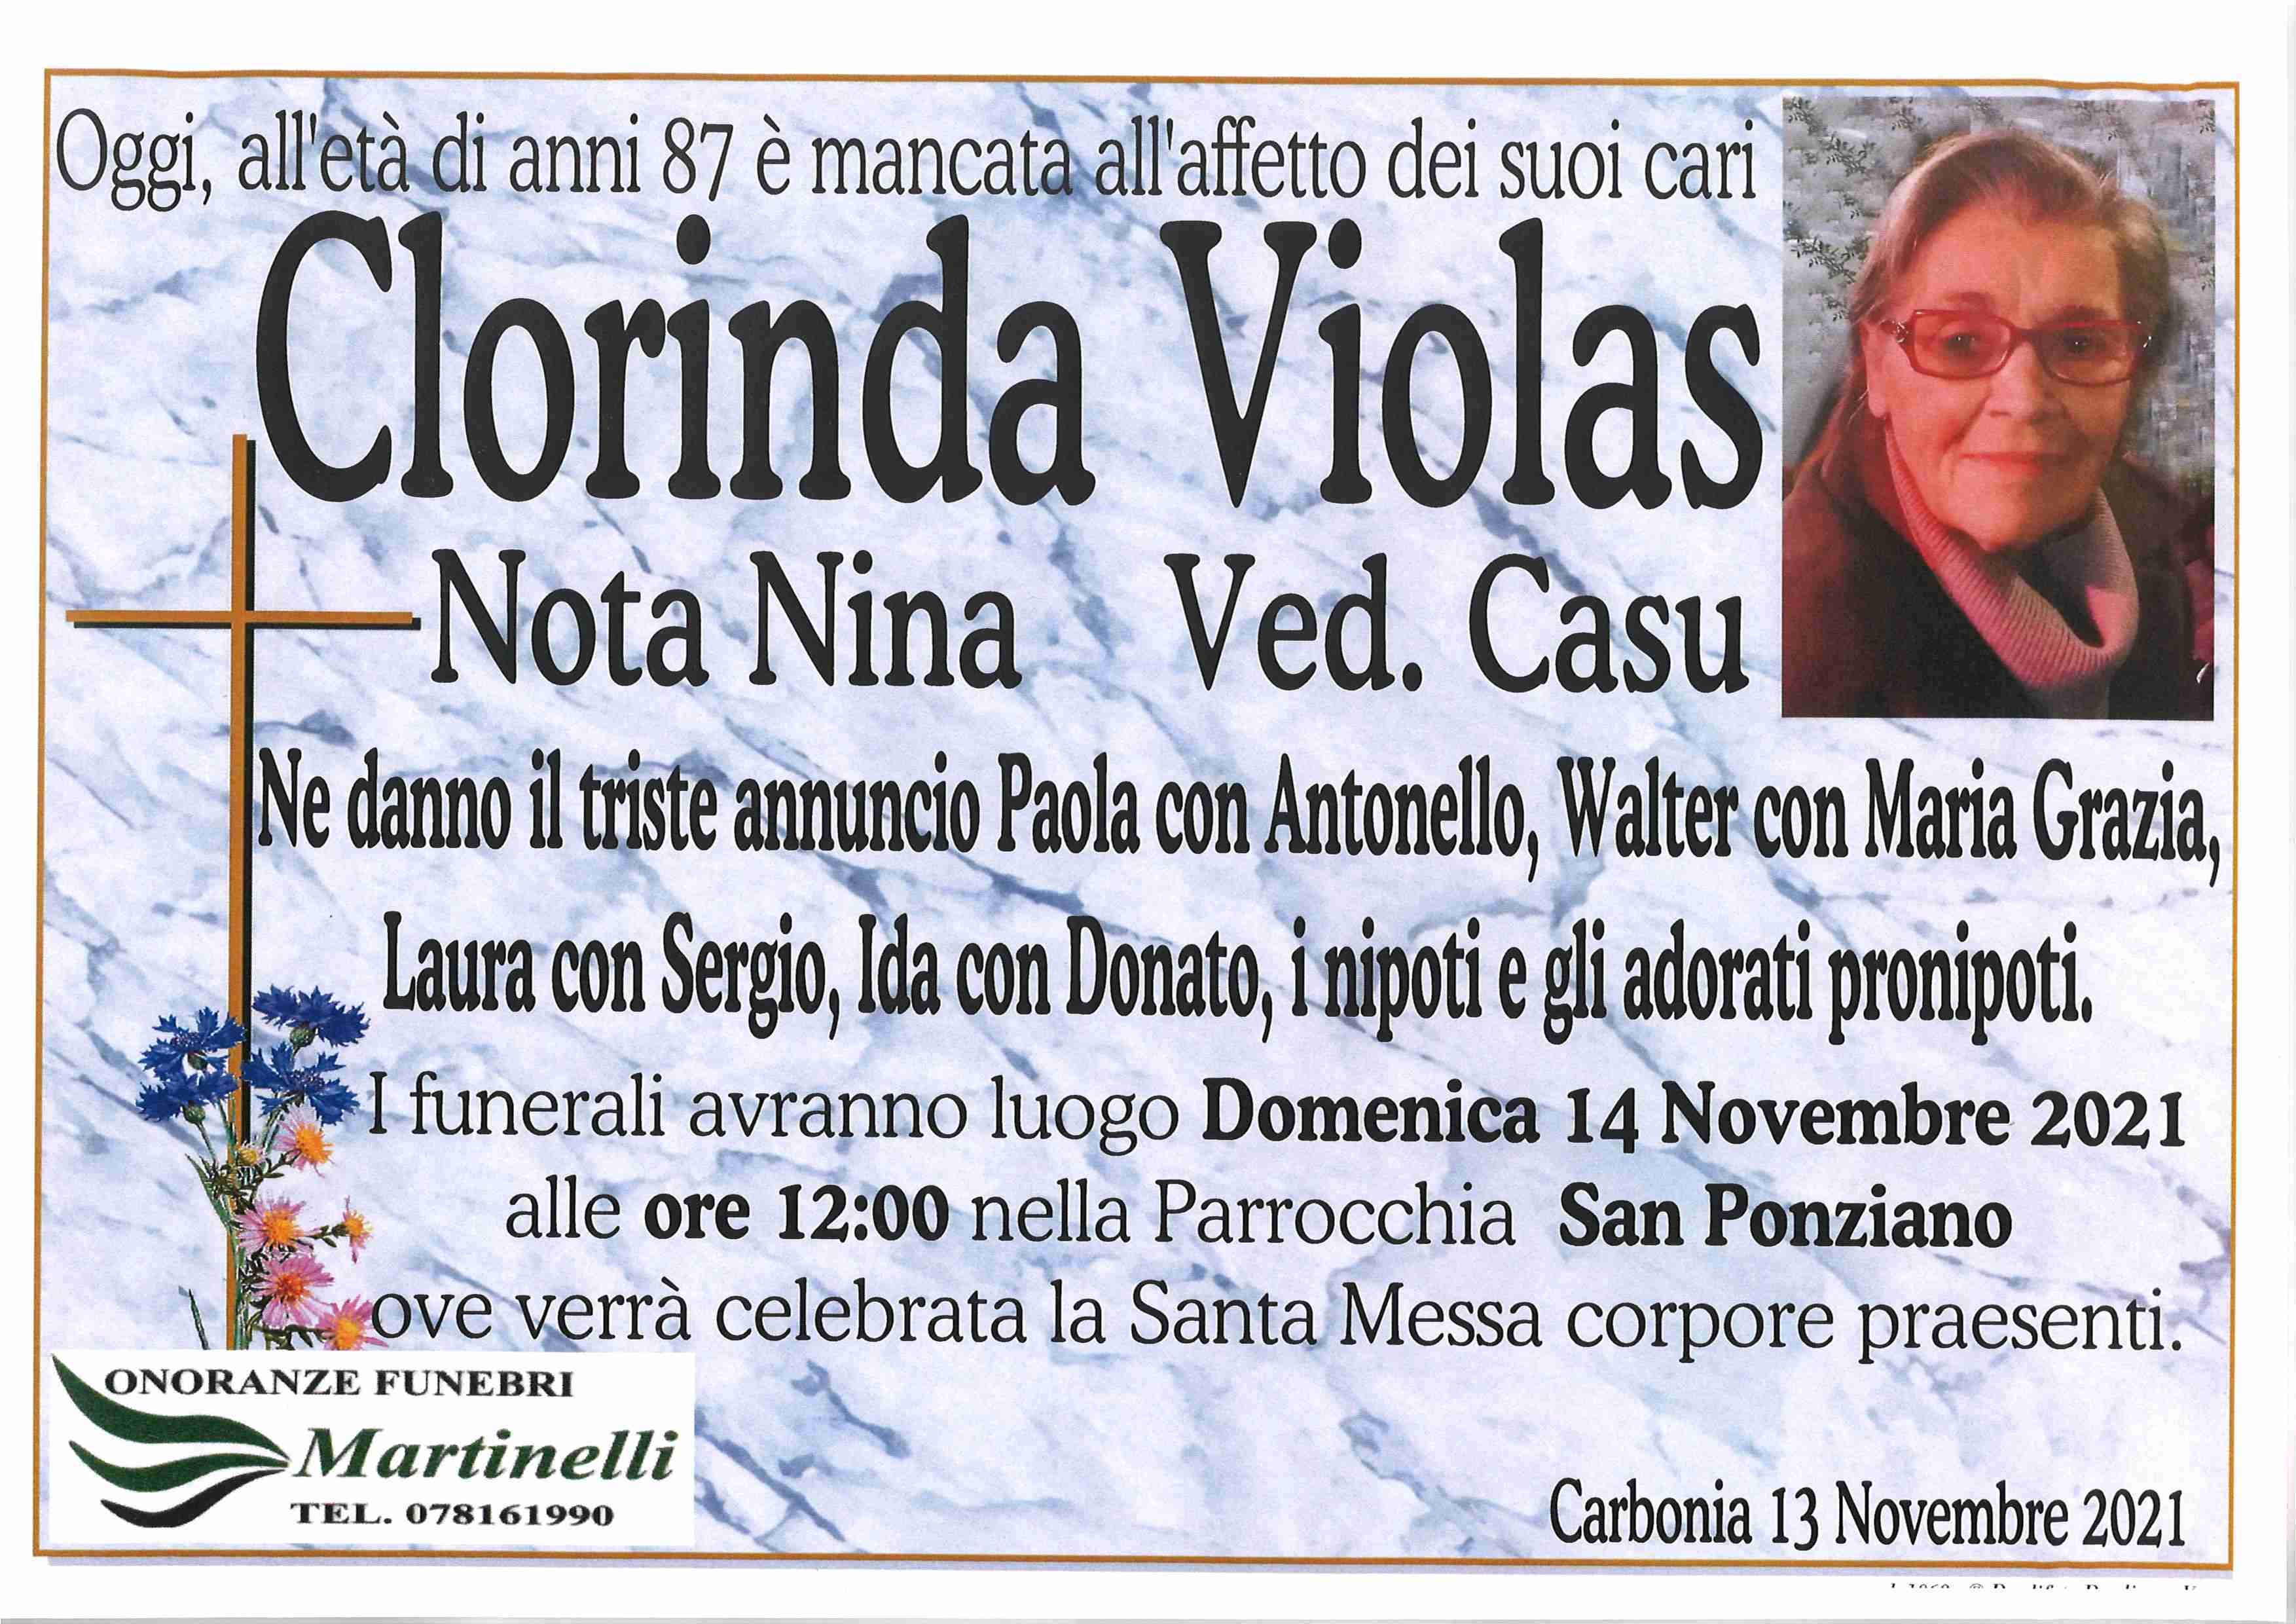 Clorinda Violas